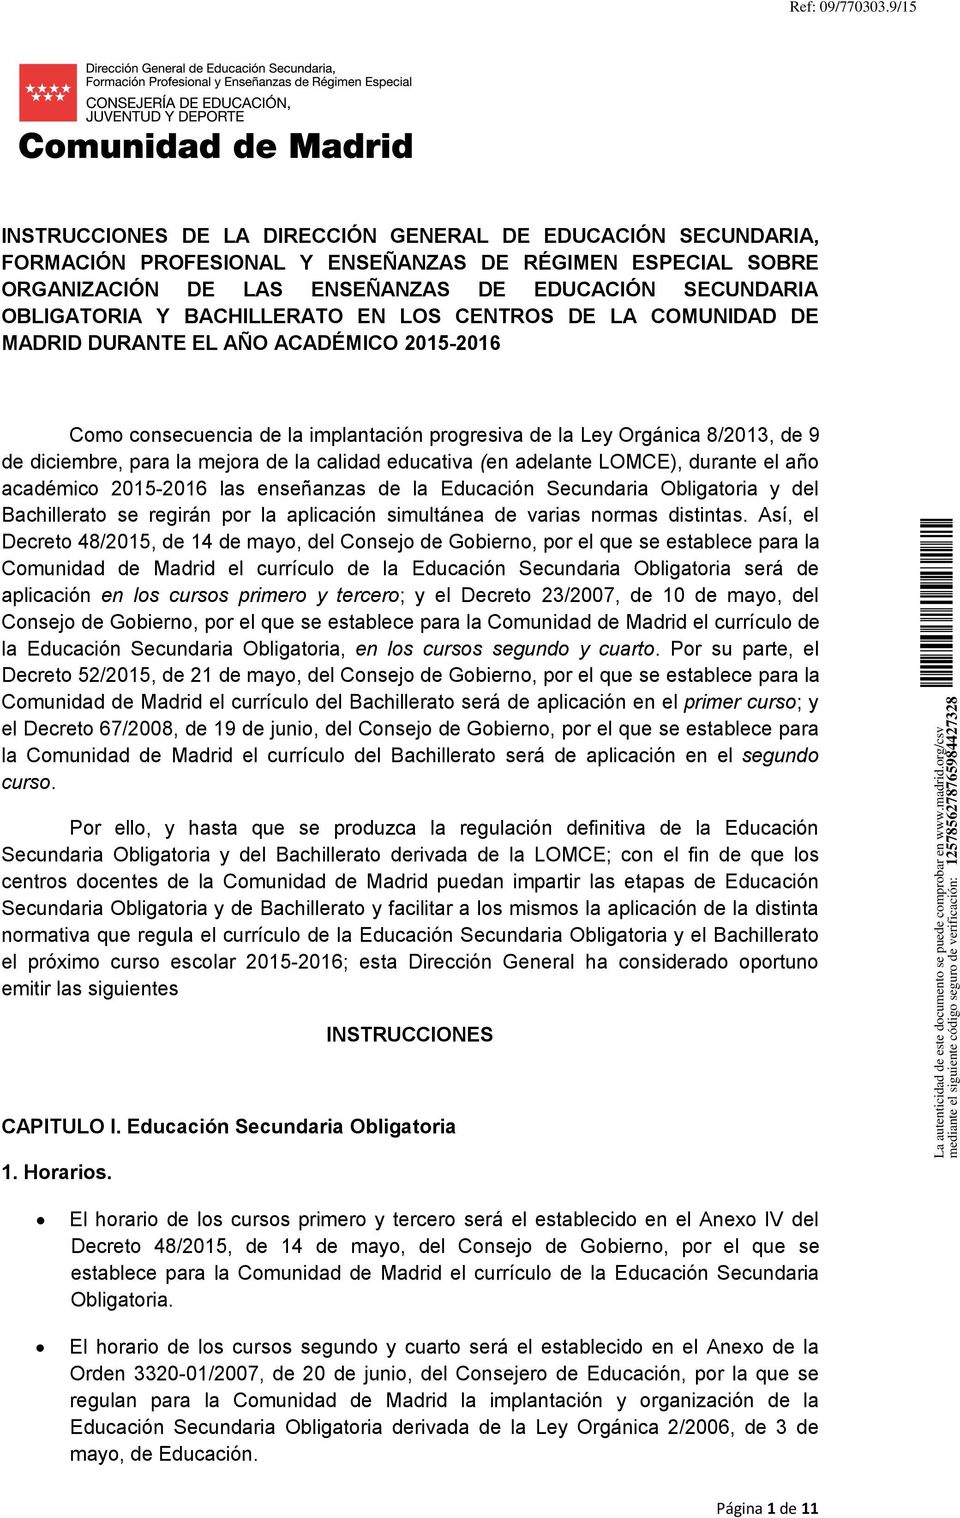 BACHILLERATO EN LOS CENTROS DE LA COMUNIDAD DE MADRID DURANTE EL AÑO ACADÉMICO 2015-2016 Como consecuencia de la implantación progresiva de la Ley Orgánica 8/2013, de 9 de diciembre, para la mejora